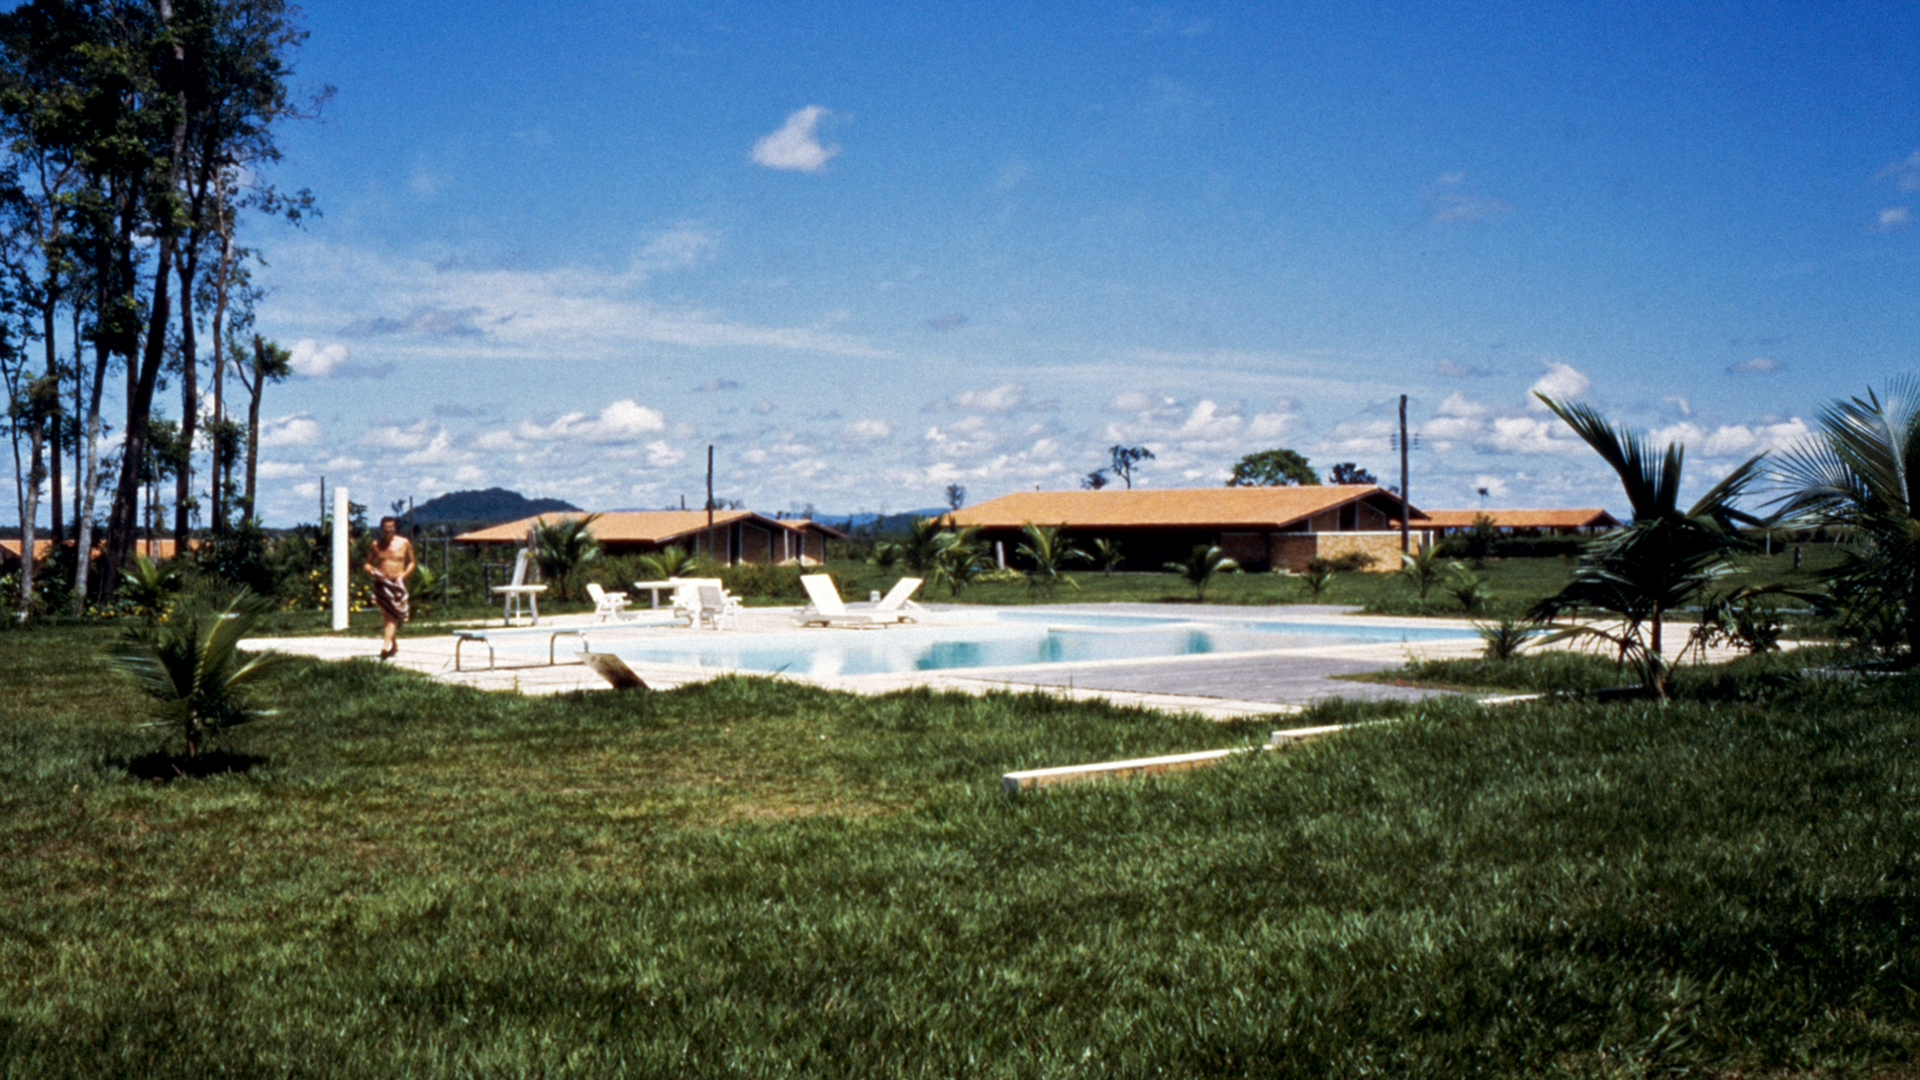 Hauptgebäude einer Farm in Brasilien mit Swimmingpool. | Privat/NDR/ARD